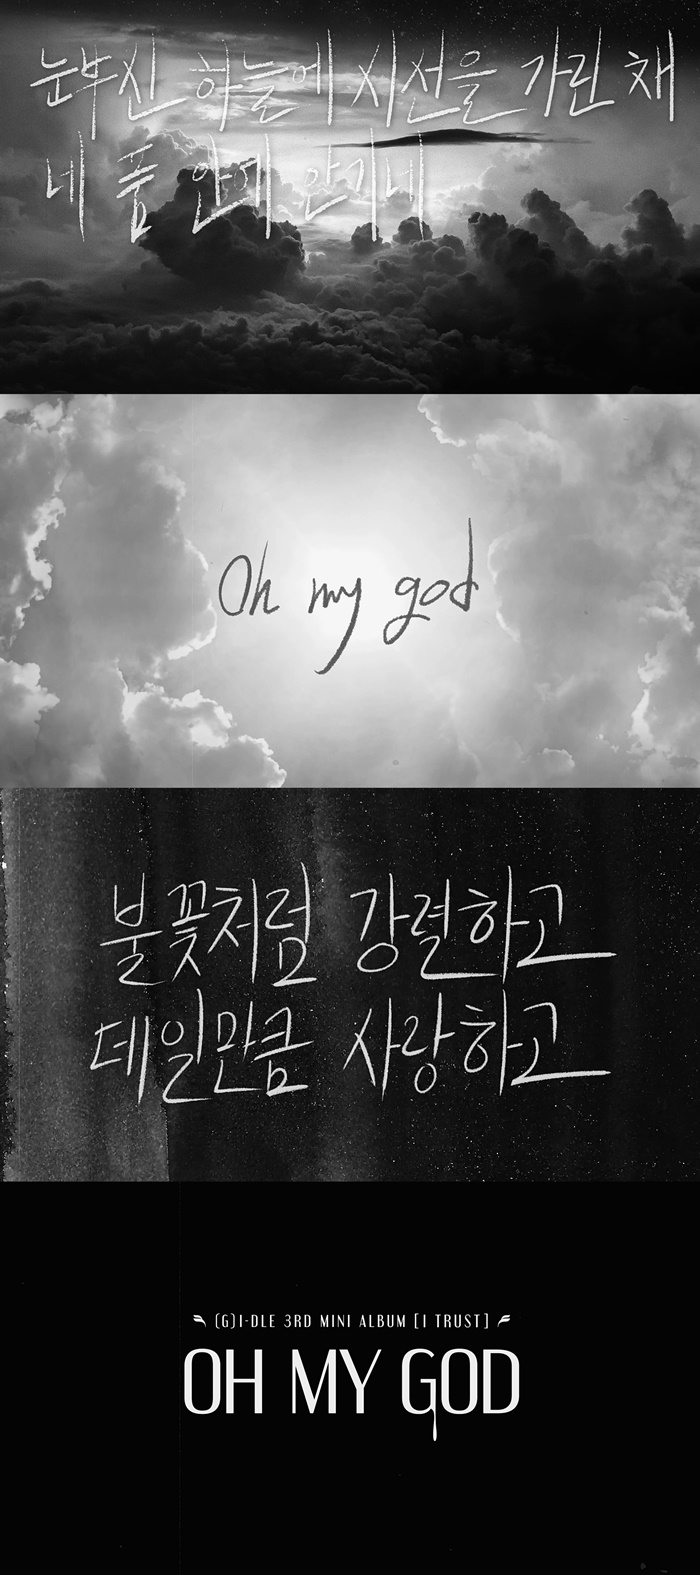 (여자)아이들, 신곡 'Oh my god' 리릭 비디오 공개…몽환+강렬